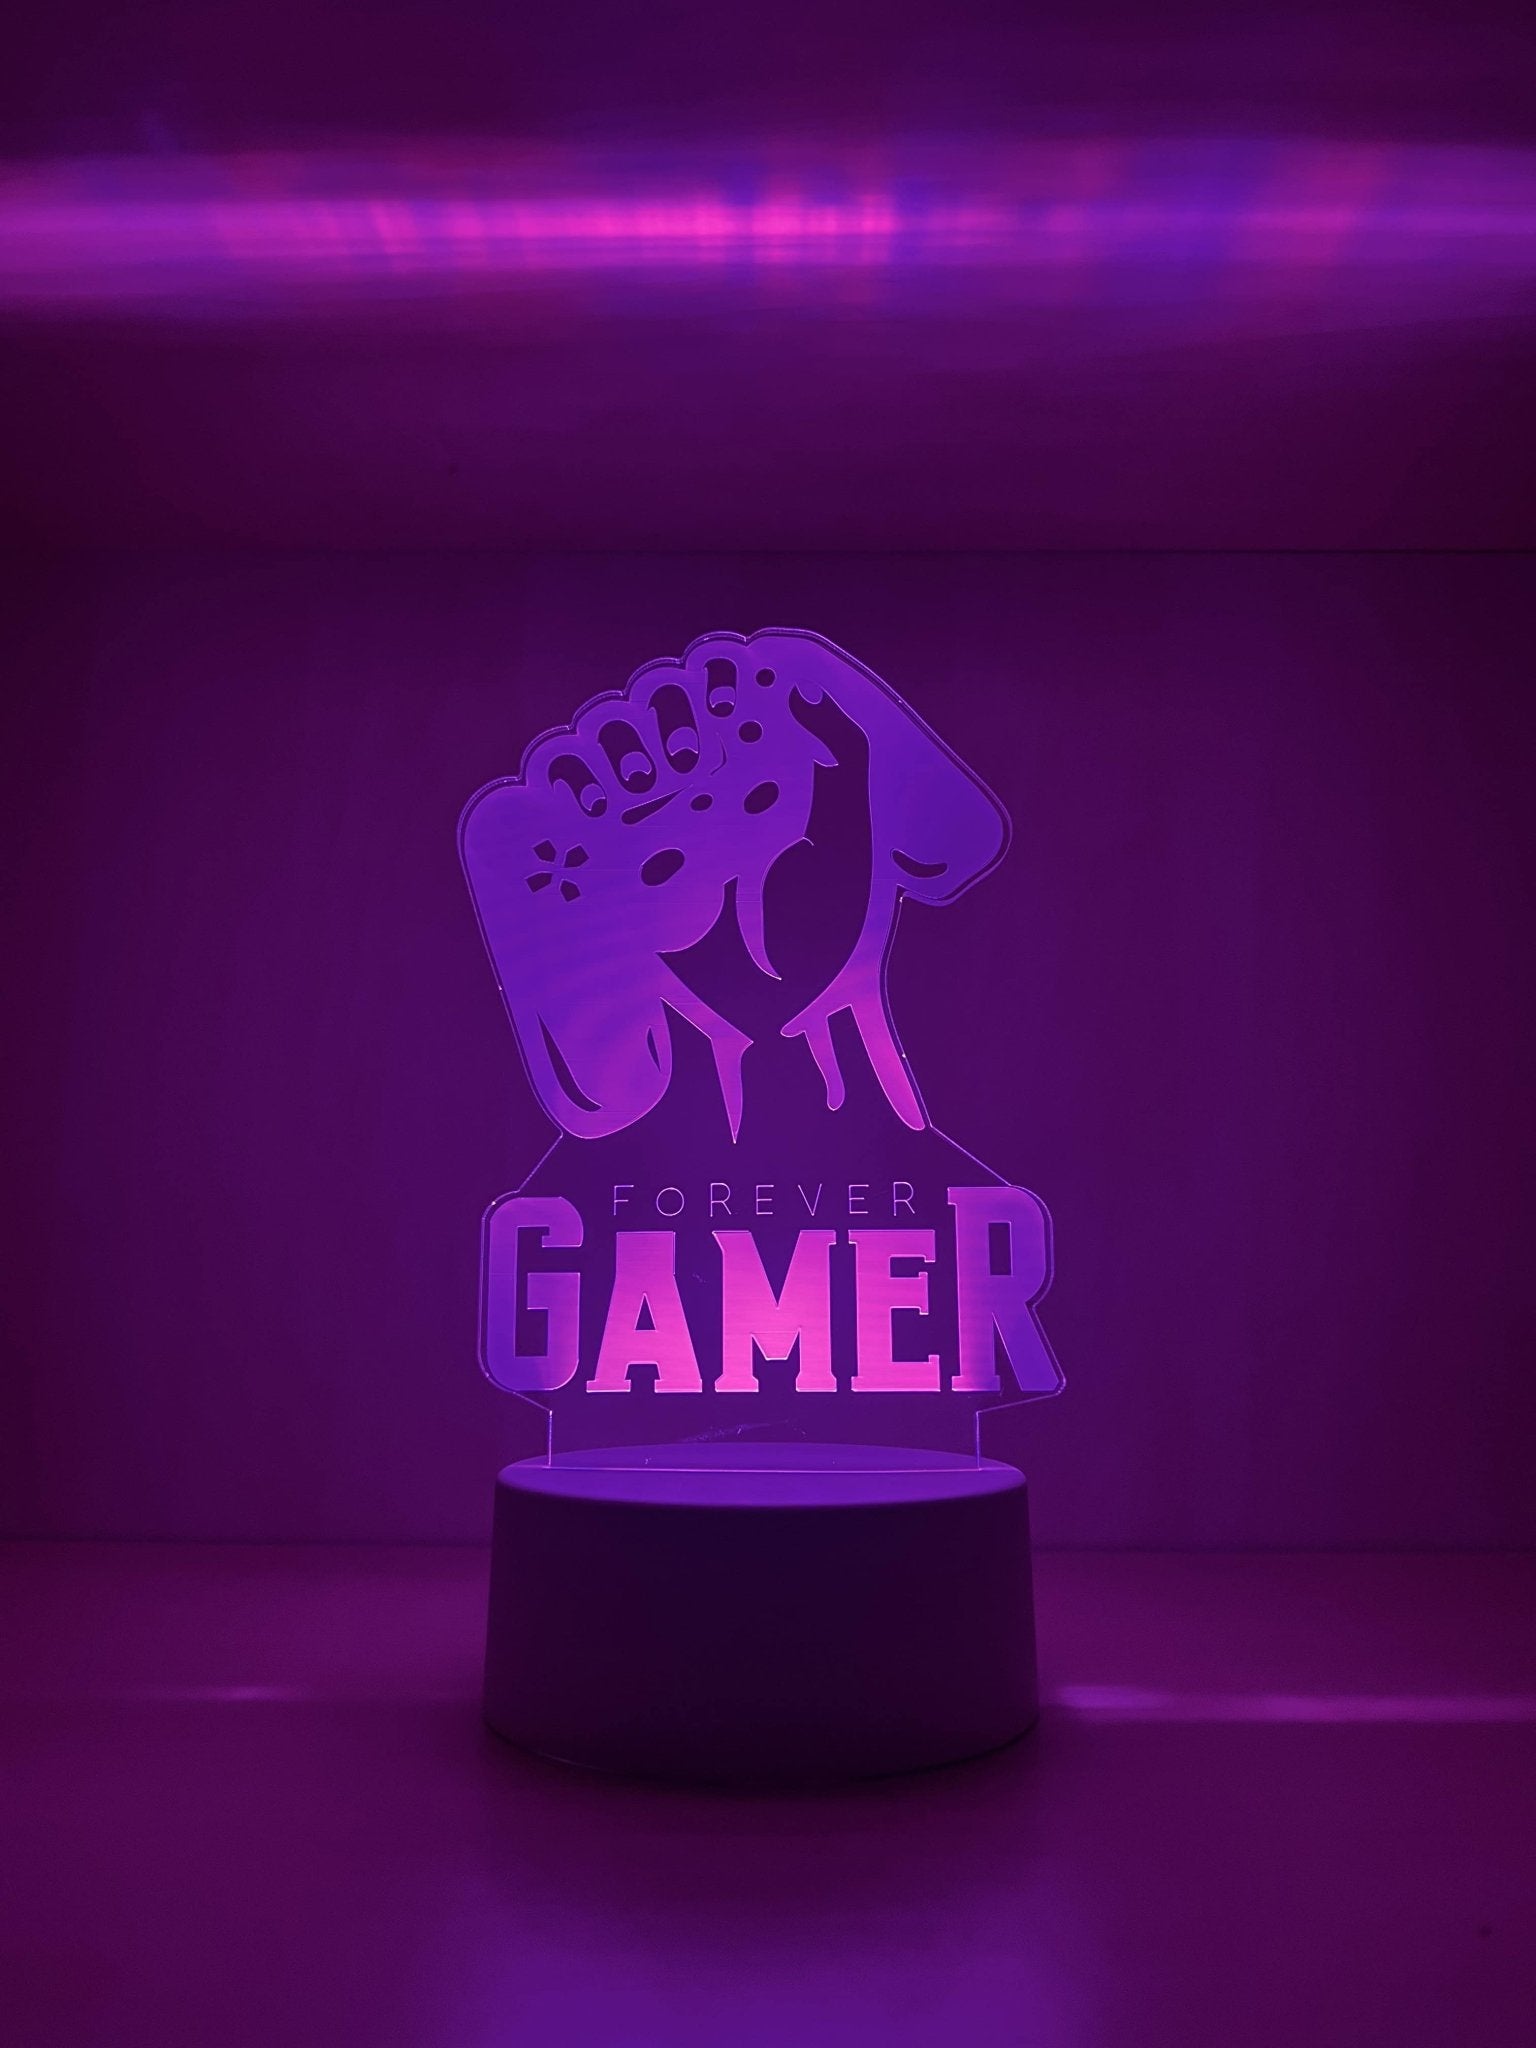 Forever Gamer - Illuminate Designs